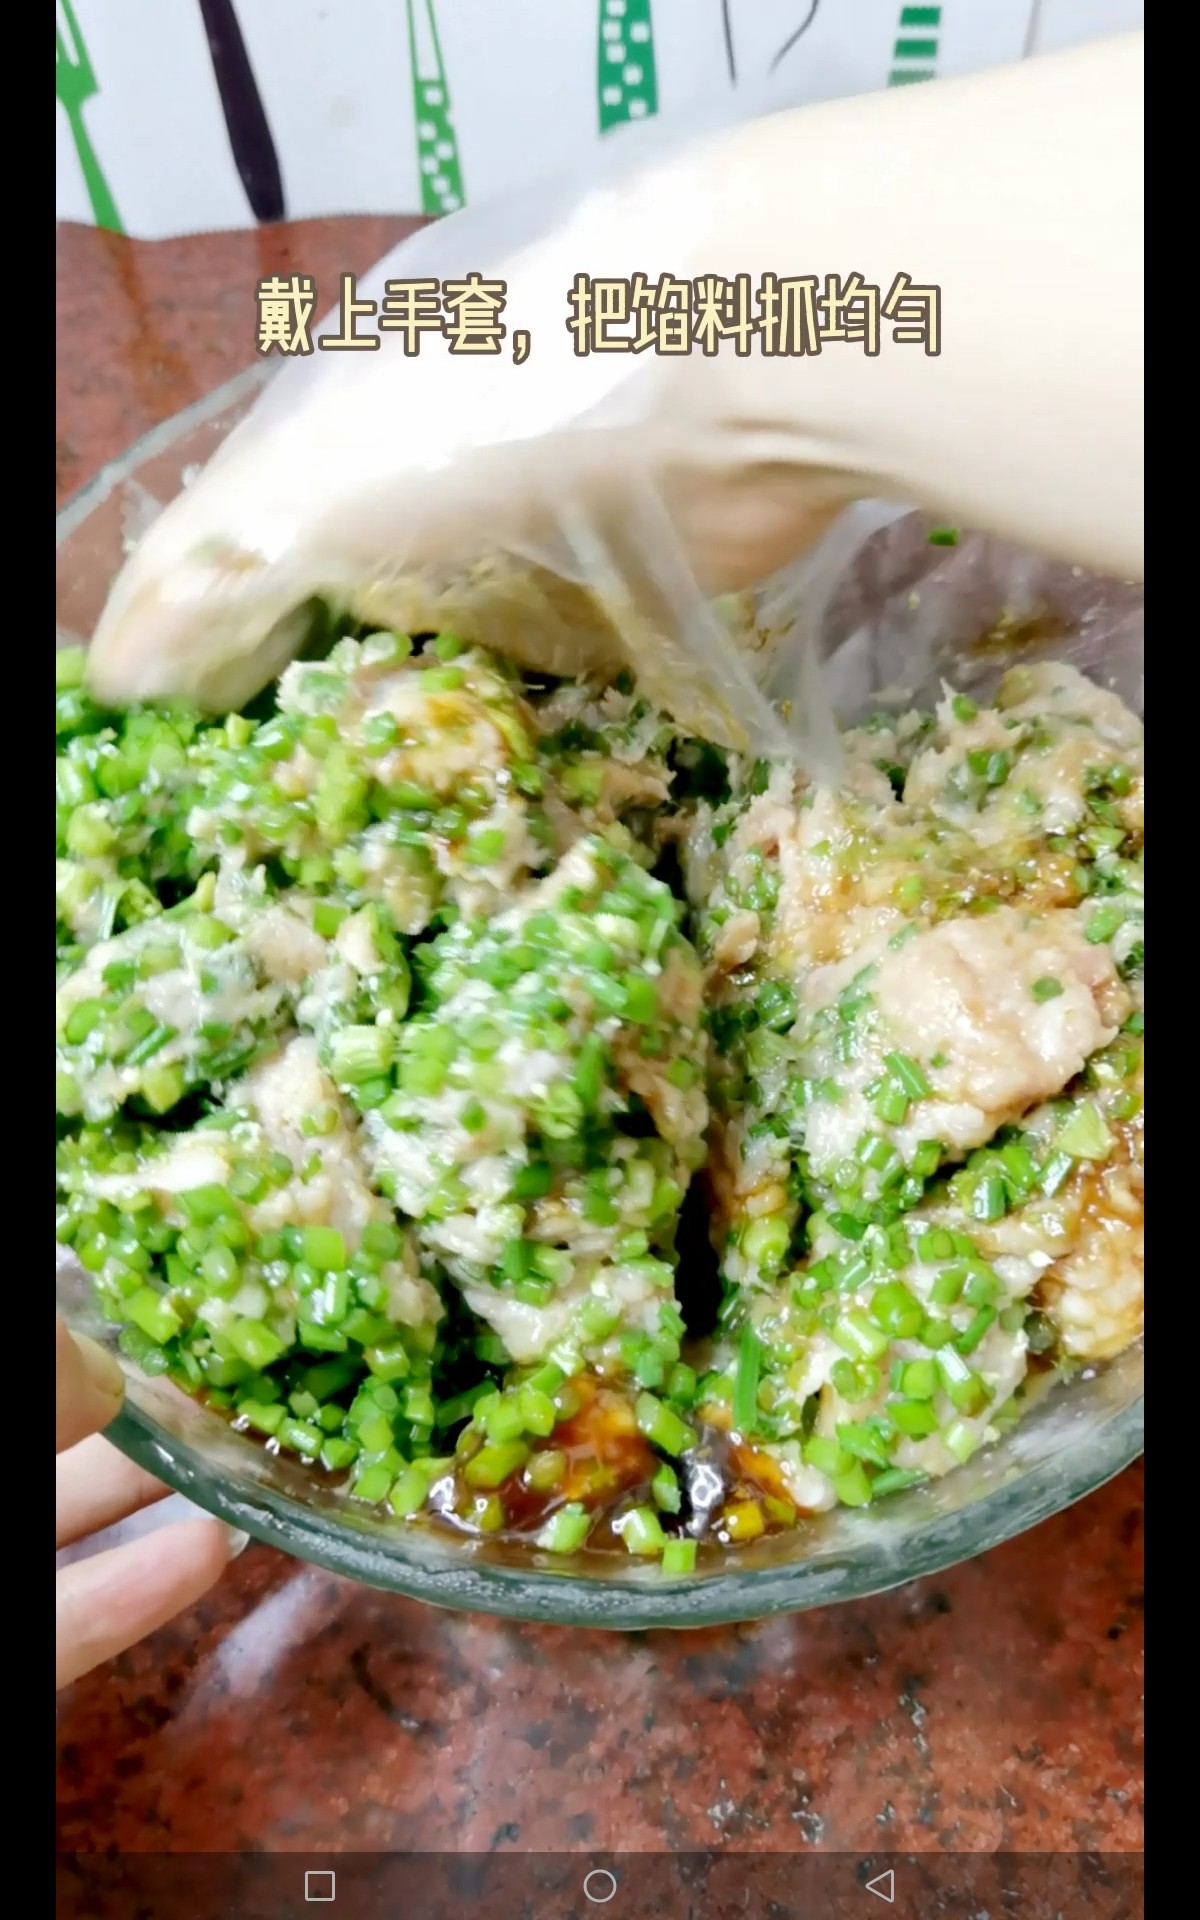 #冬至大如年# Meat Dumplings with Leek and Moss recipe